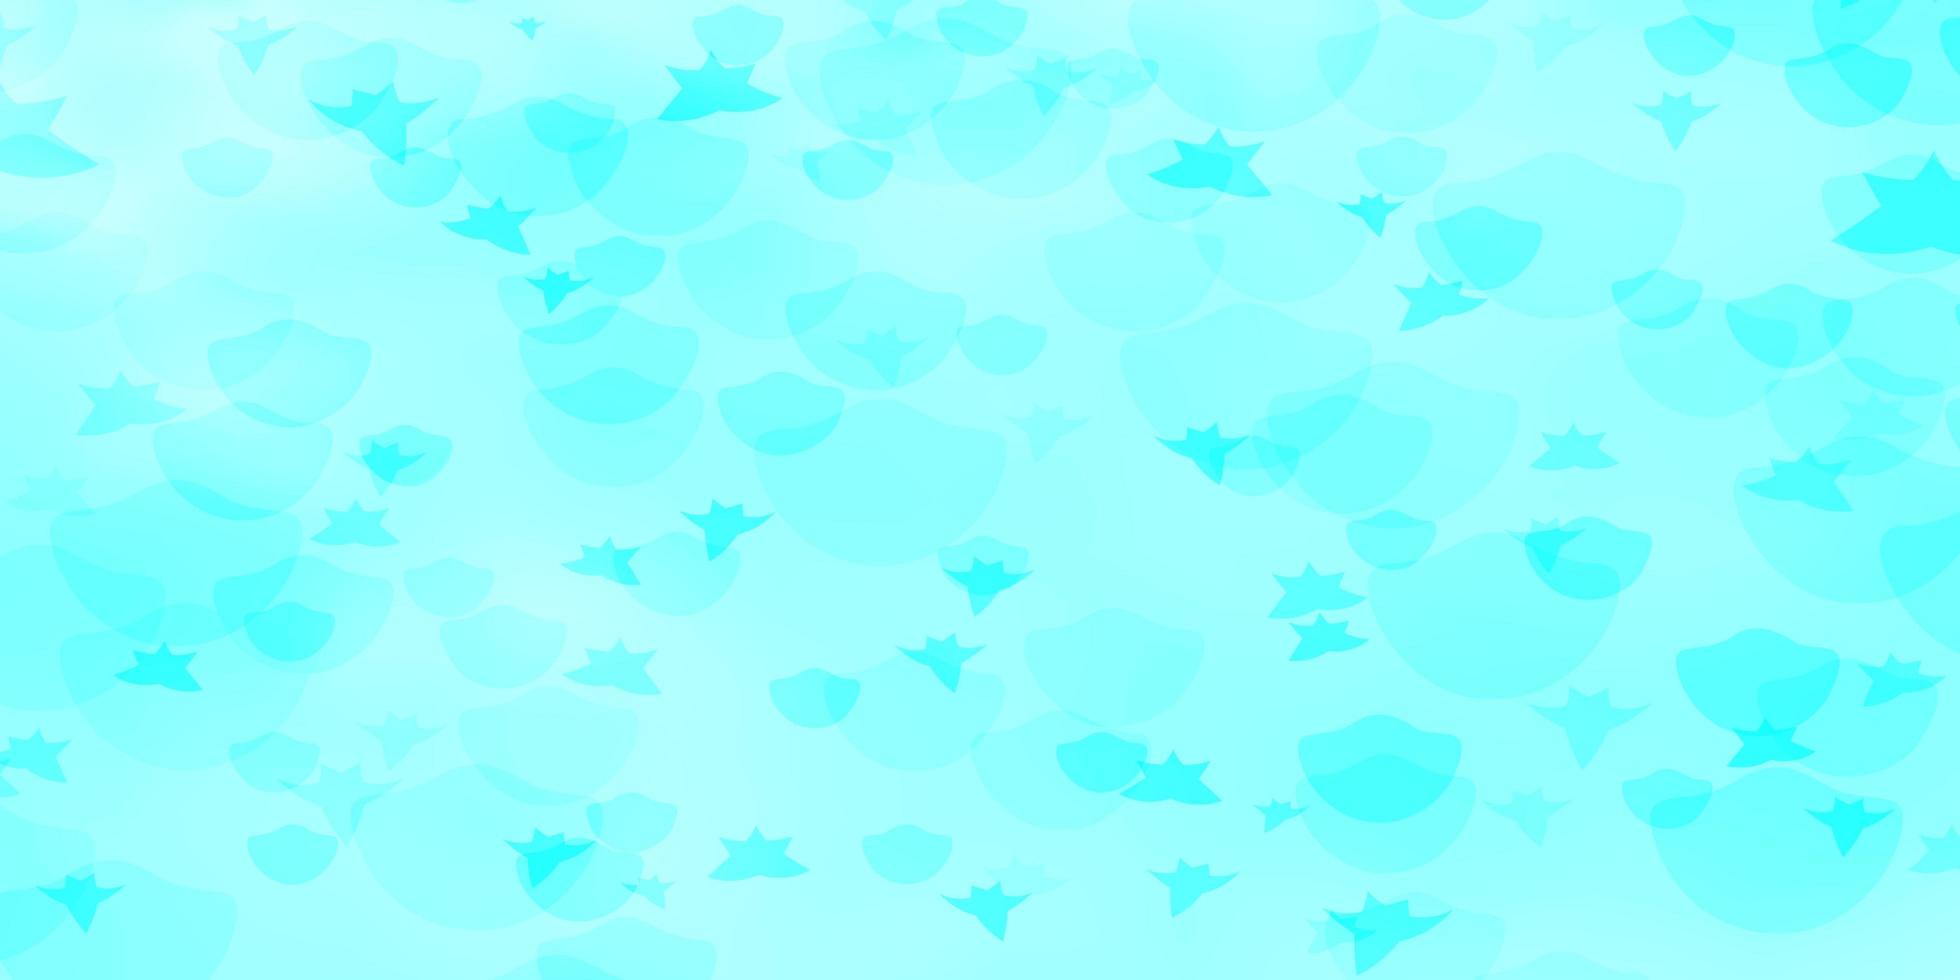 sfondo vettoriale con cerchi stelle glitter illustrazione astratta con gocce colorate stelle texture per tapparelle tende